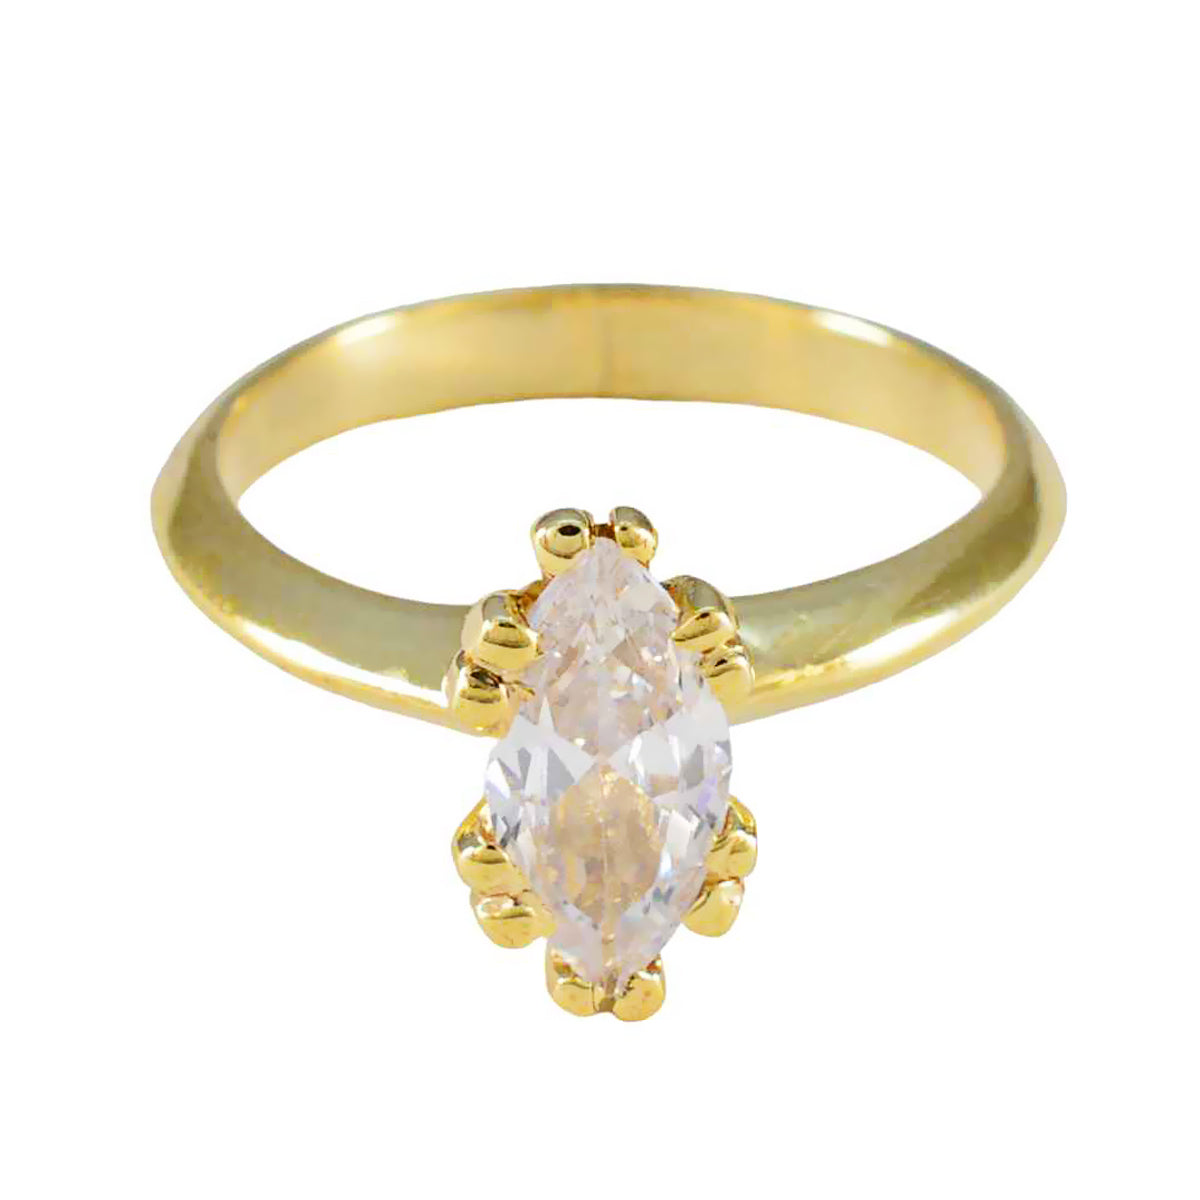 riyo eccellente anello in argento con placcatura in oro giallo anello con montatura a griffe a forma di marquise in pietra bianca con cz